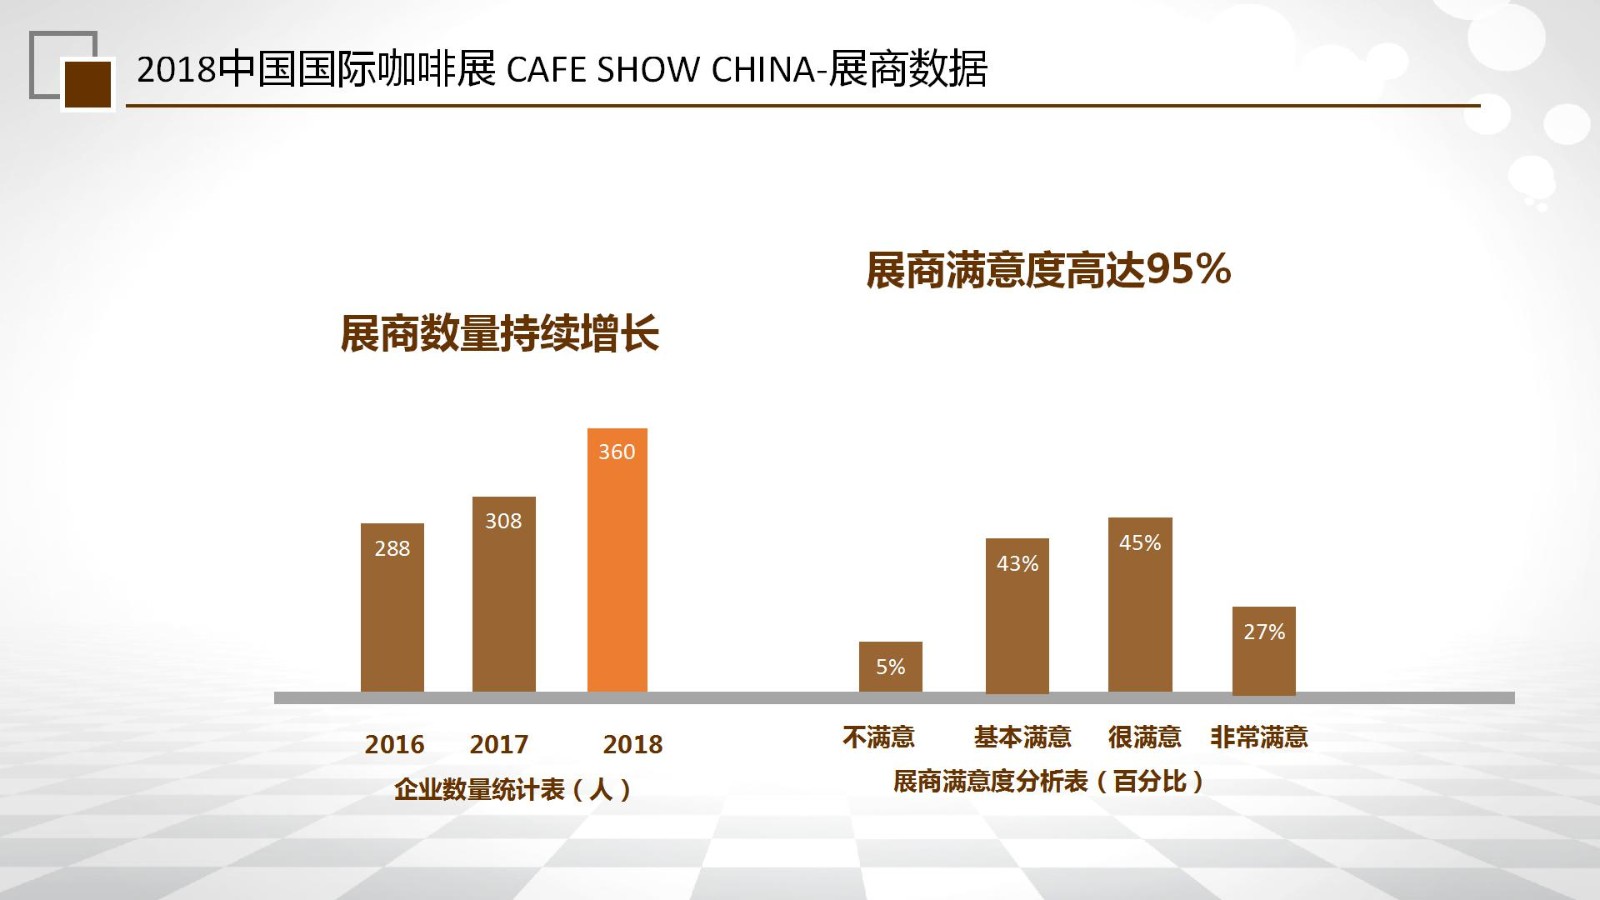 中国（北京）咖啡展览会